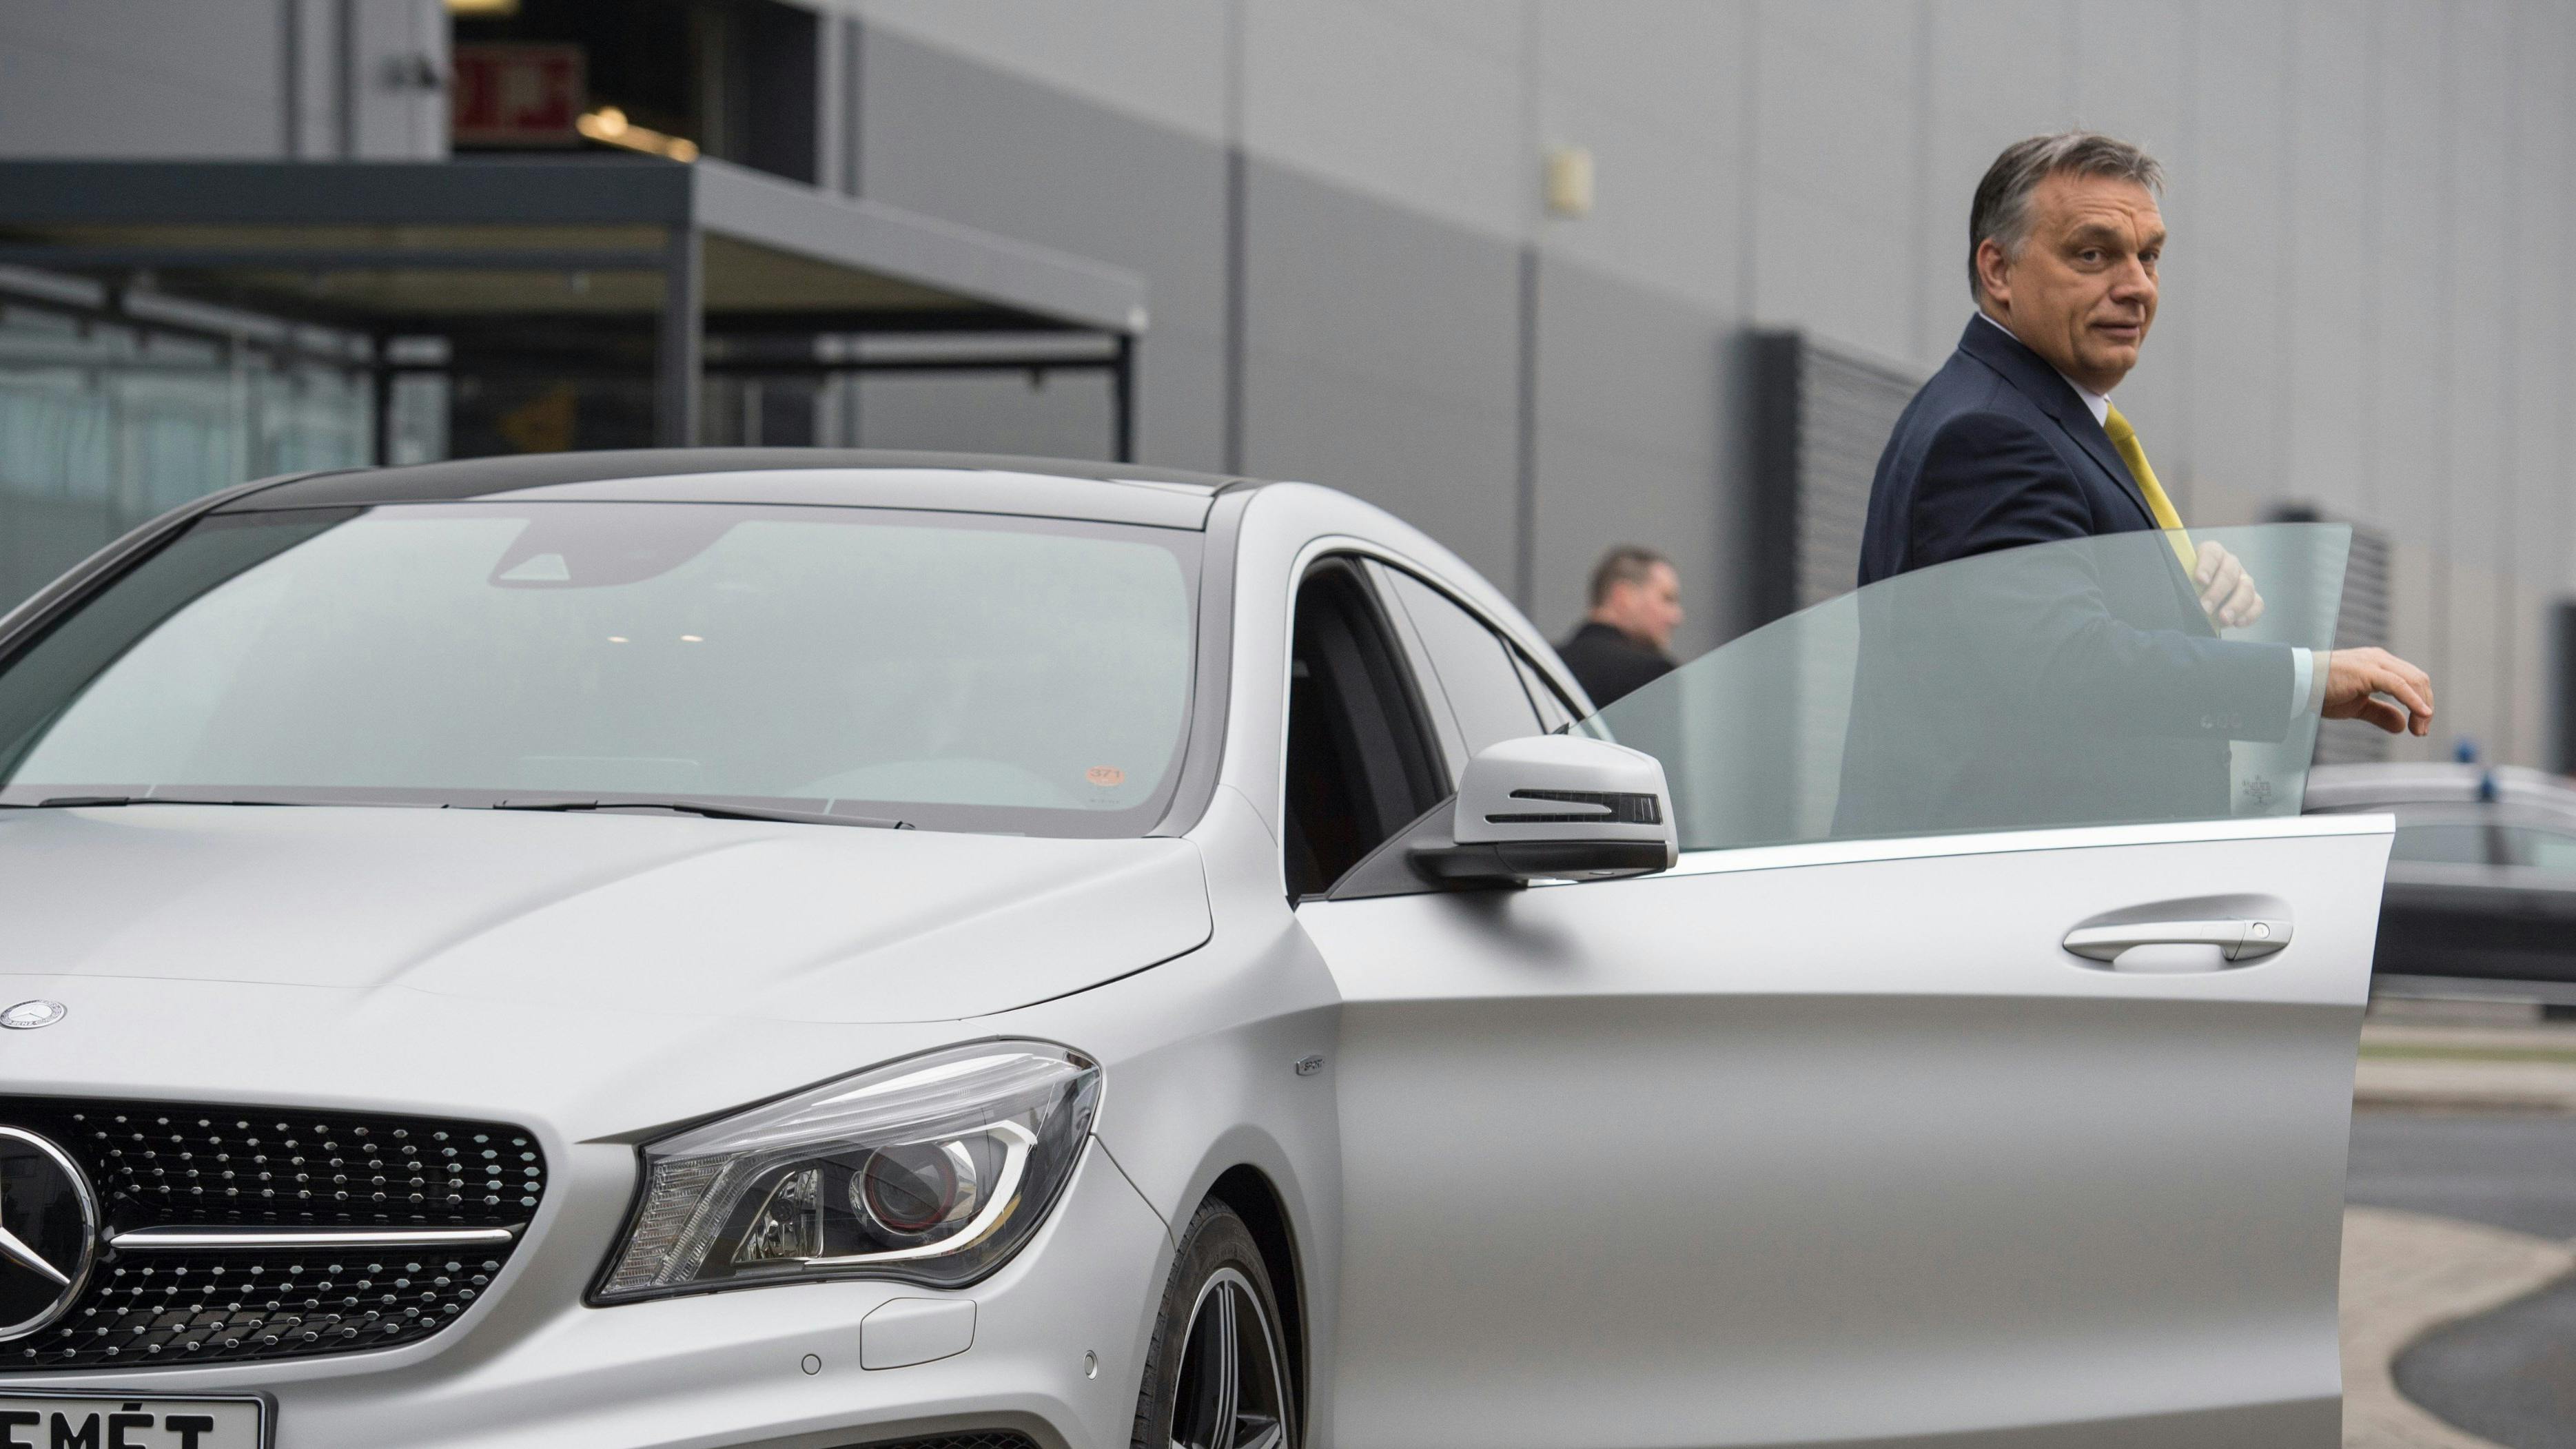 Wir sehen Victor Orban, wie er aus einen neuen Daimler-Auto aussteigt. 